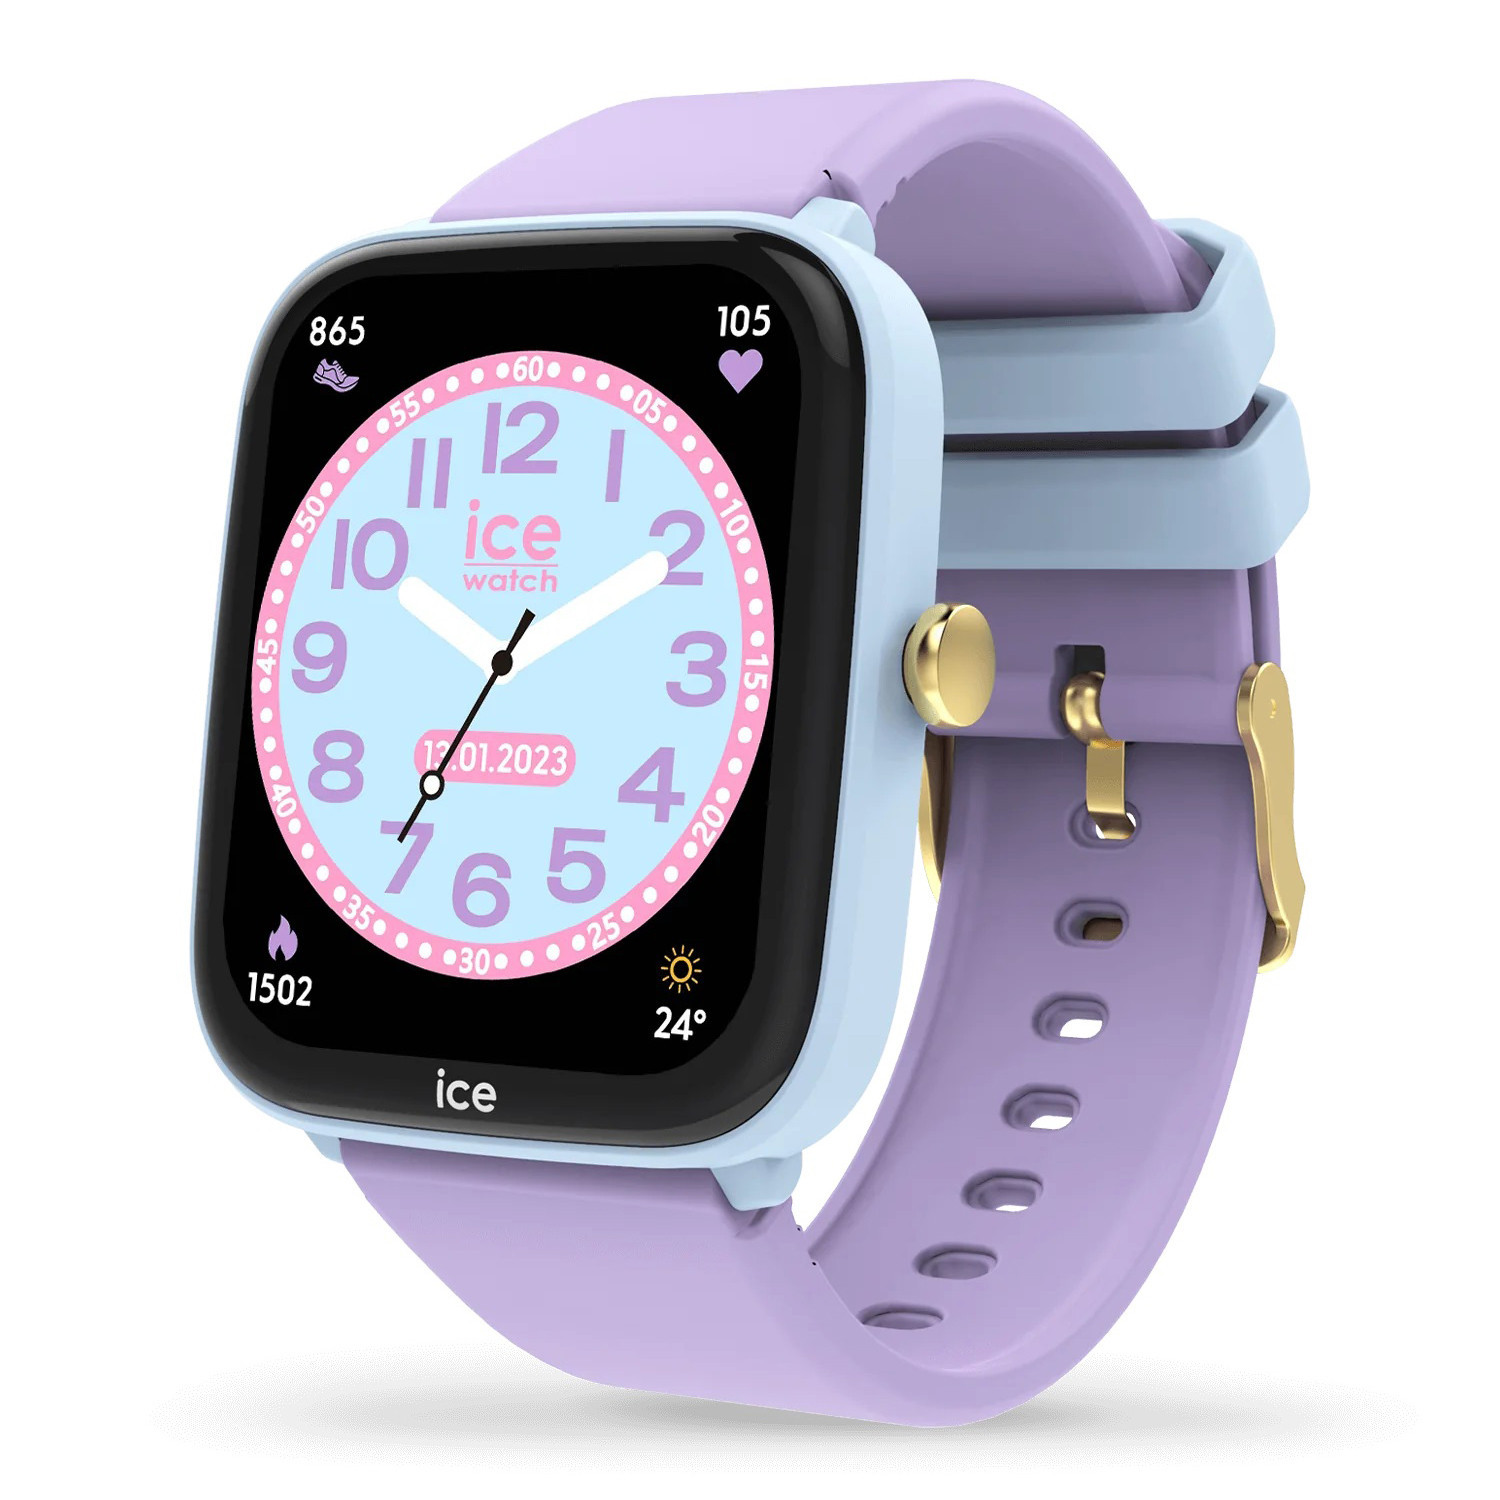 Montre connectée Ice Watch smart junior 2.0
Soft blue purple